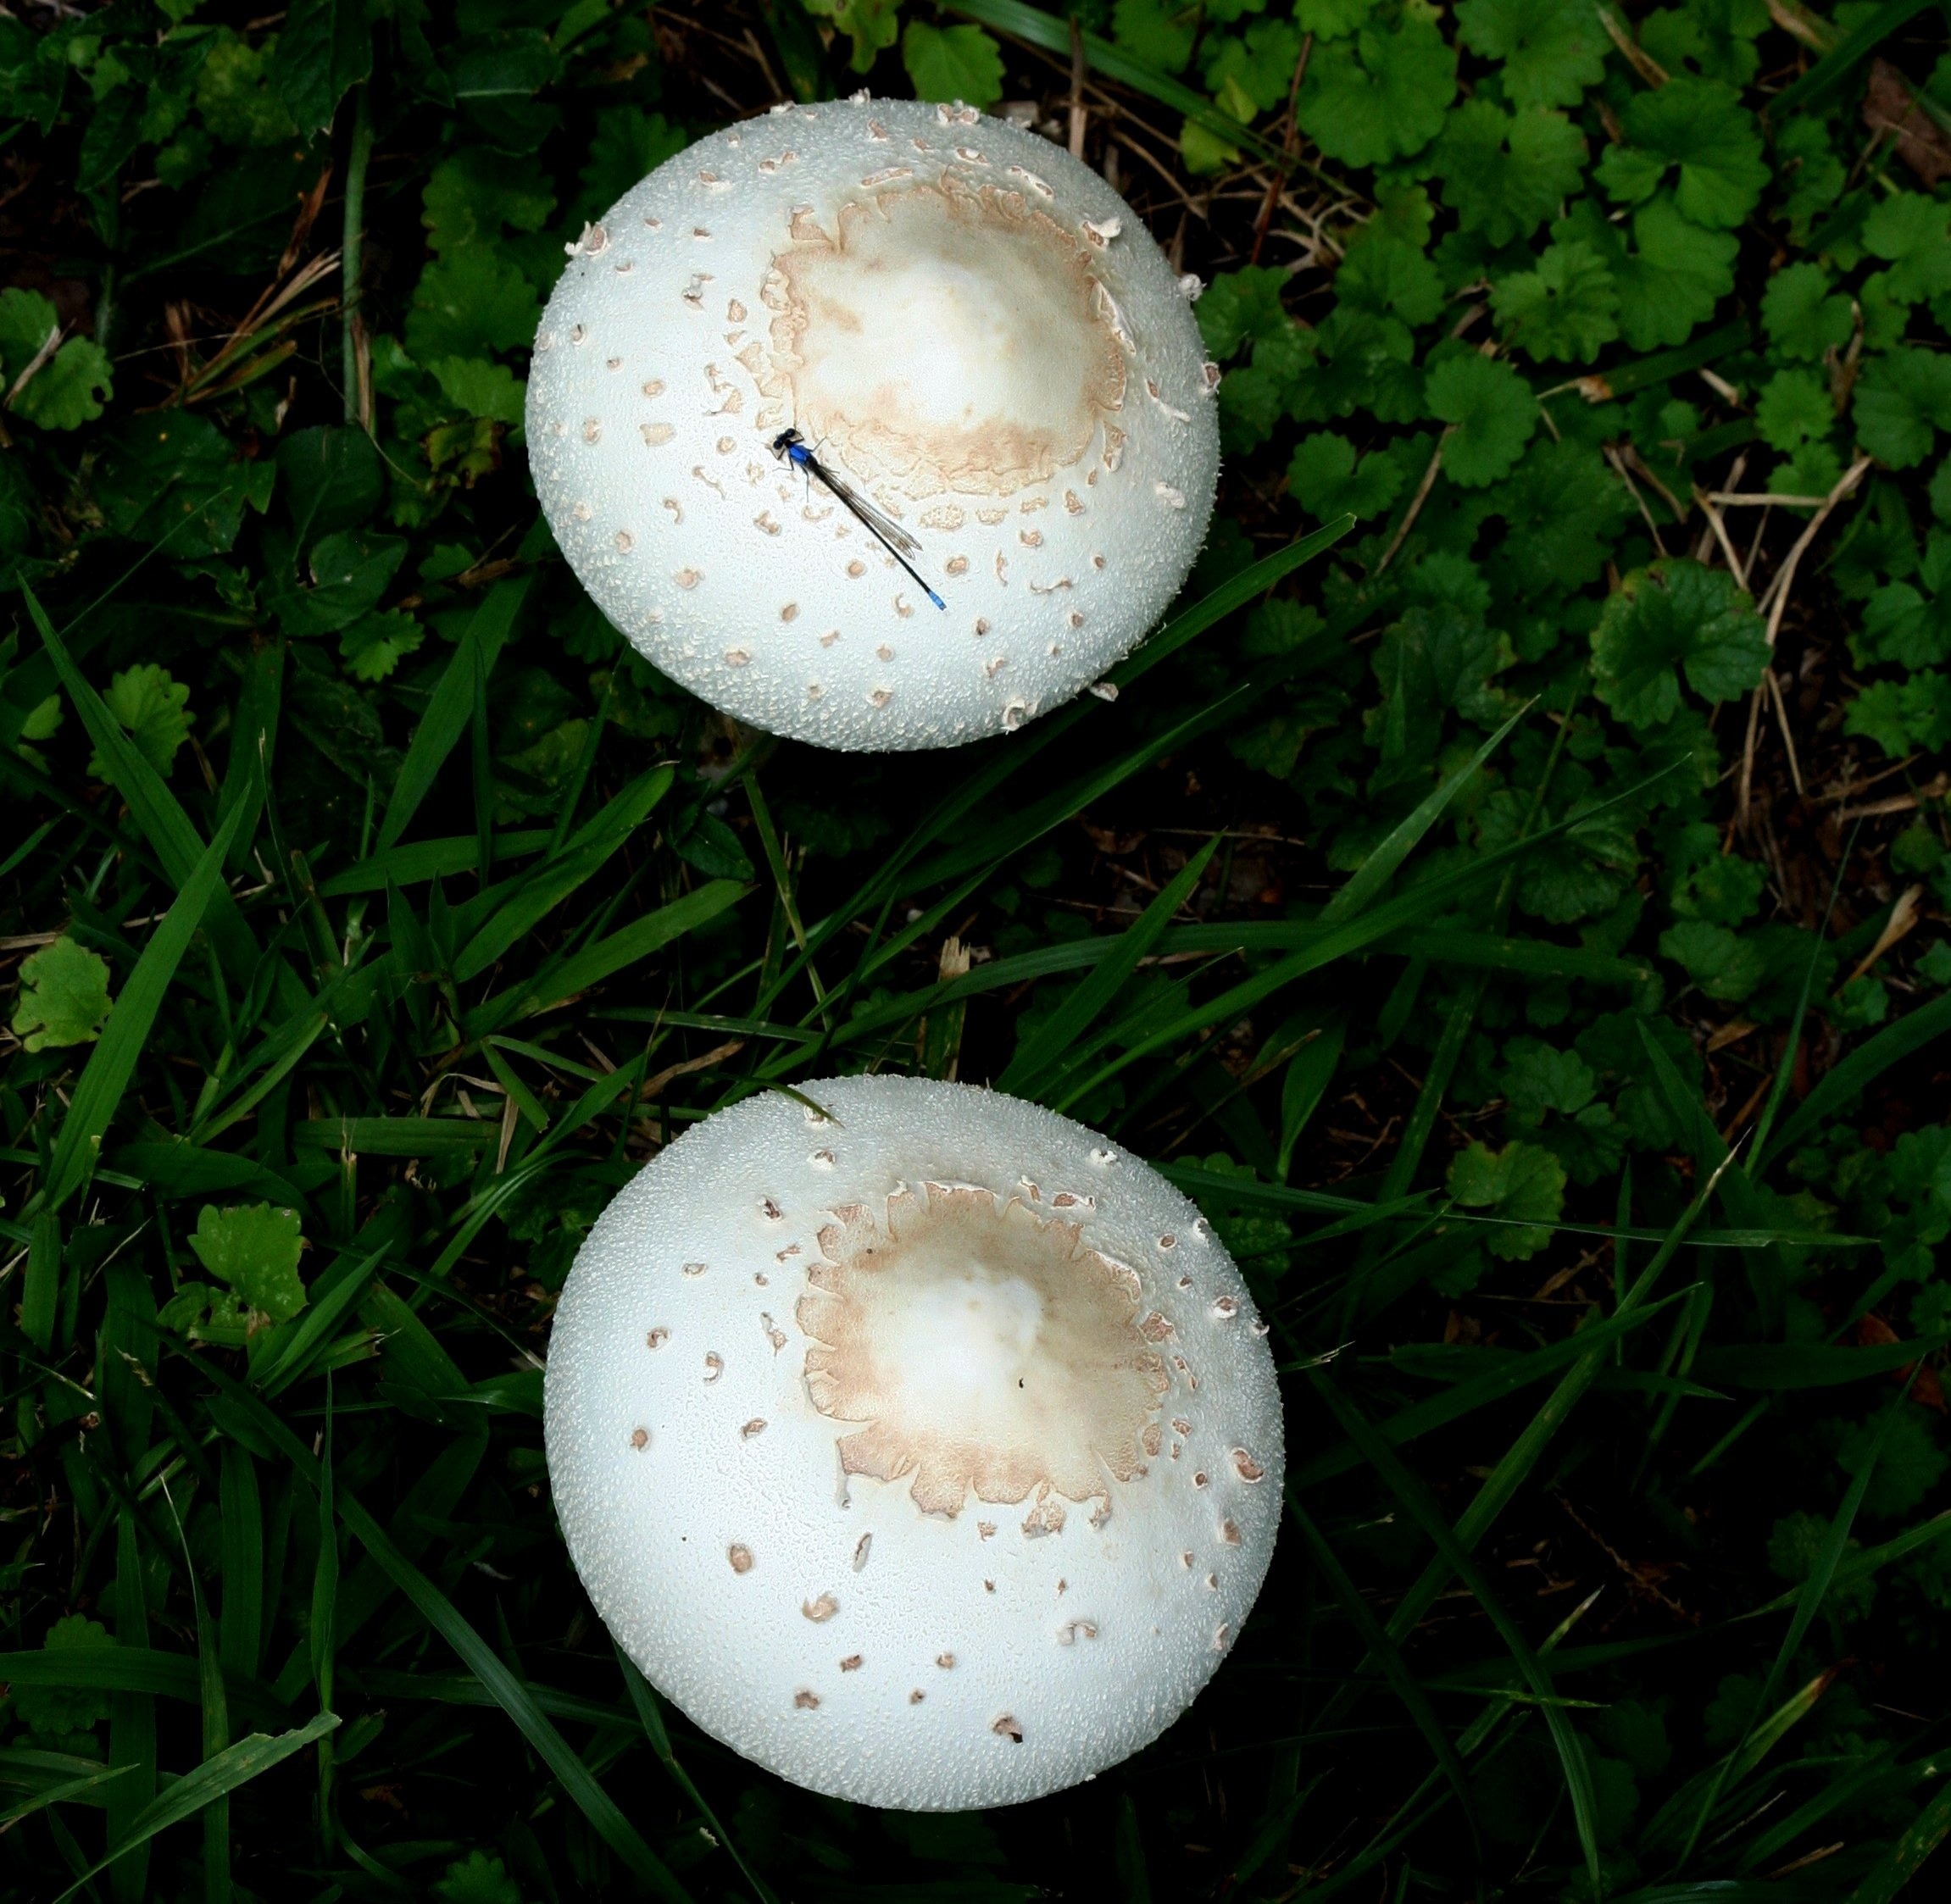 2 white mushrooms